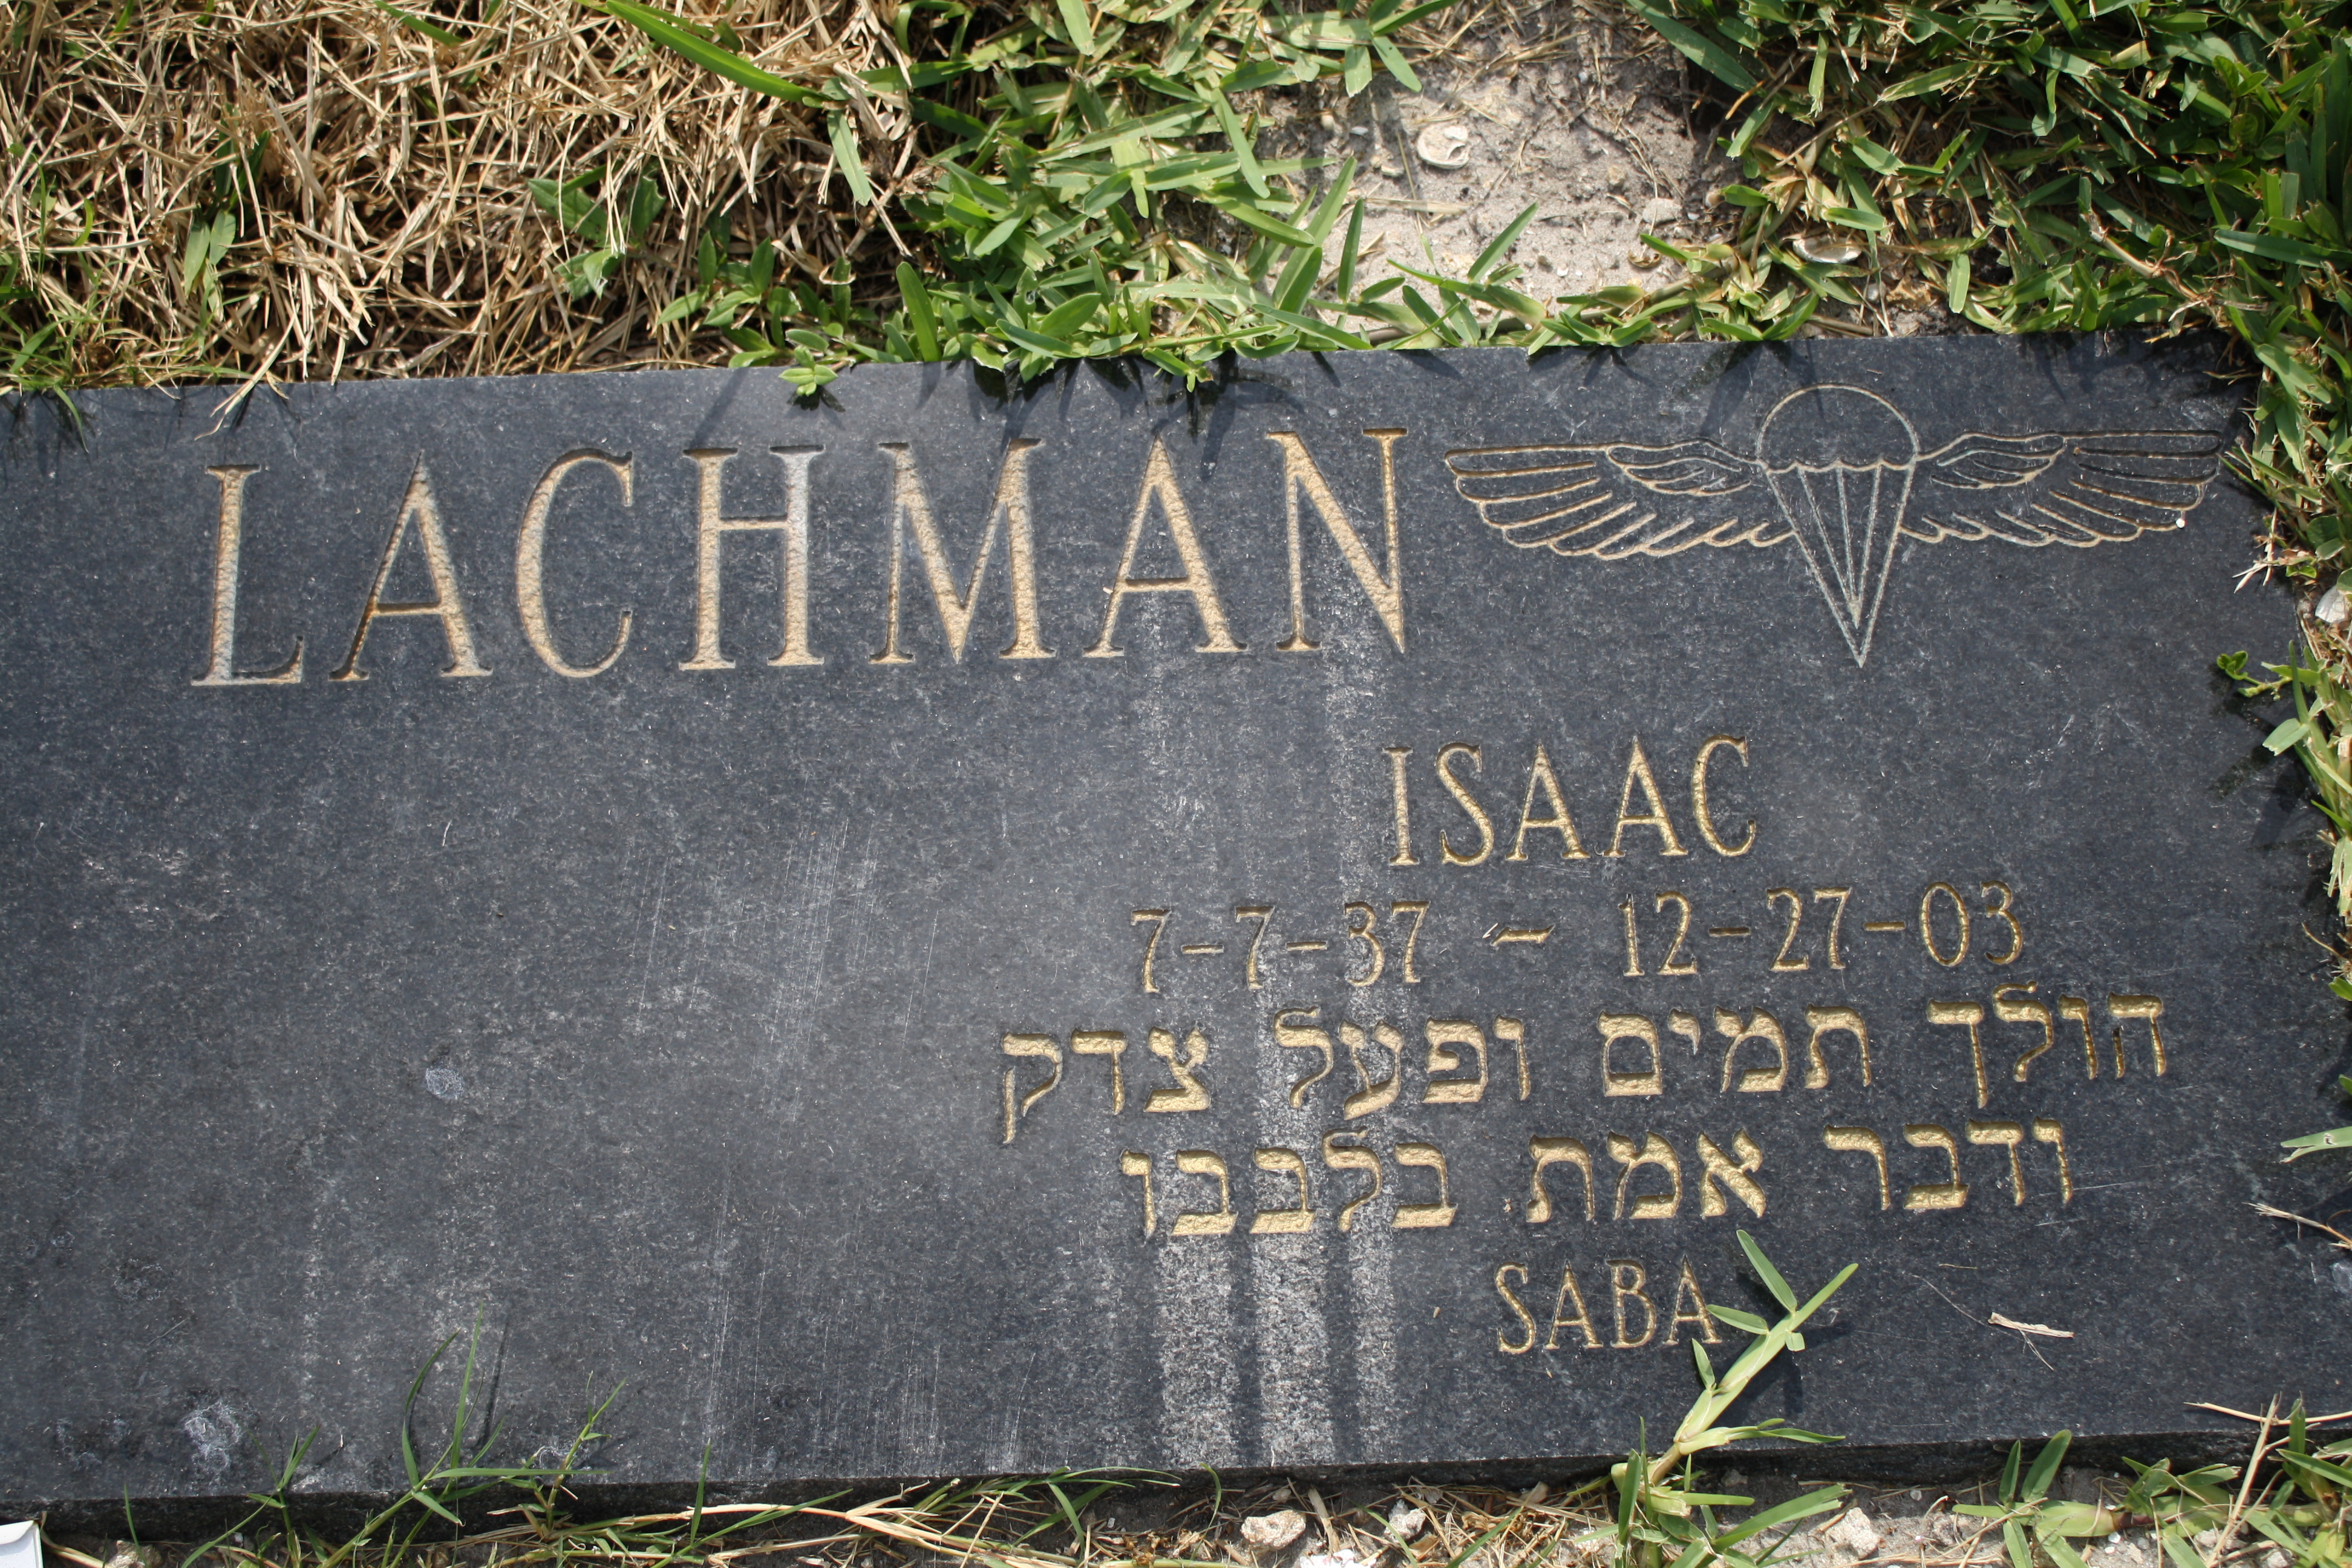 Isaac "Saba" Lachman